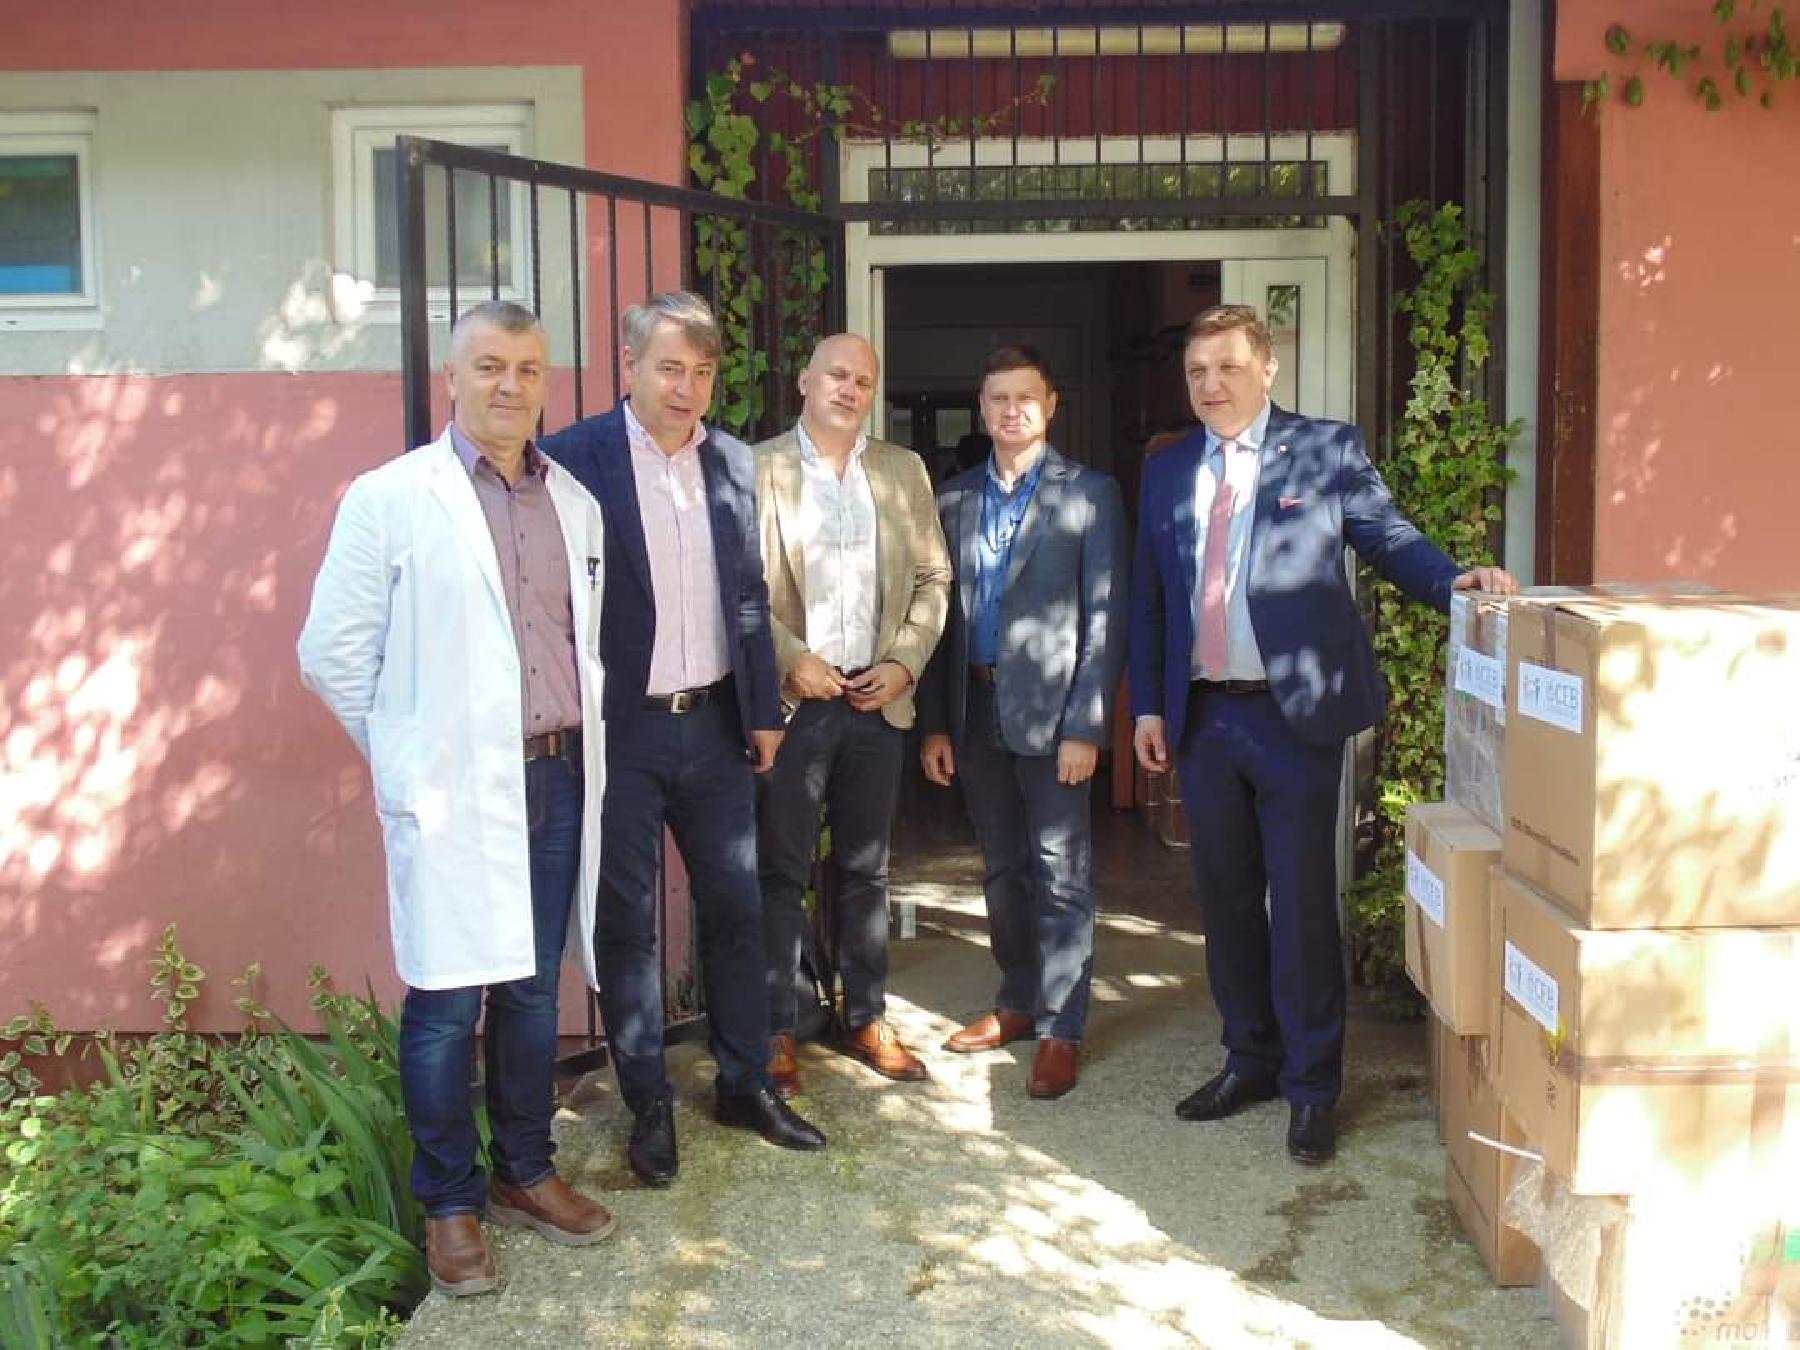 ZU Kantonalna bolnica „Dr. Irfan Ljubijankić“ Bihać posjetili su predstavnici IOM-a i ministar Ministarstva zdravstva, rada i socijalne politike 